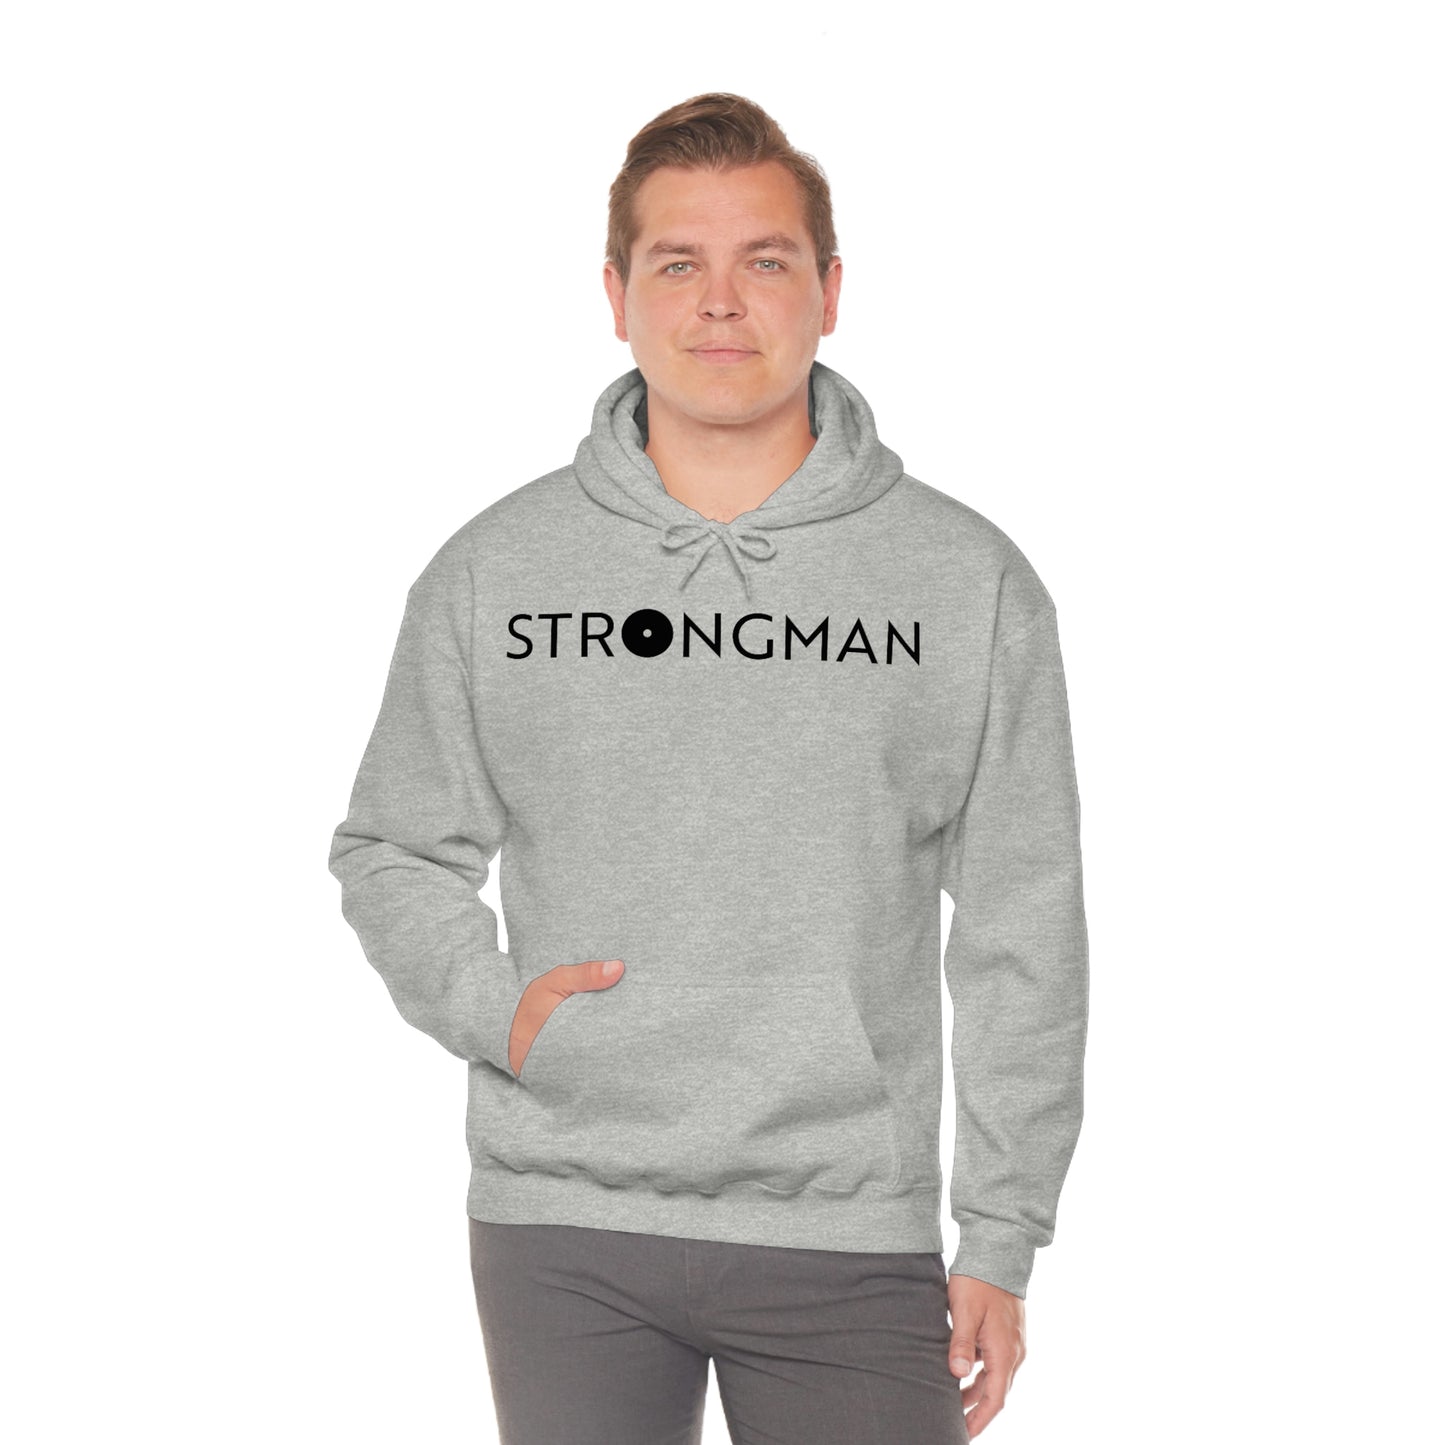 Strongman Gym Five Hooded Sweatshirt